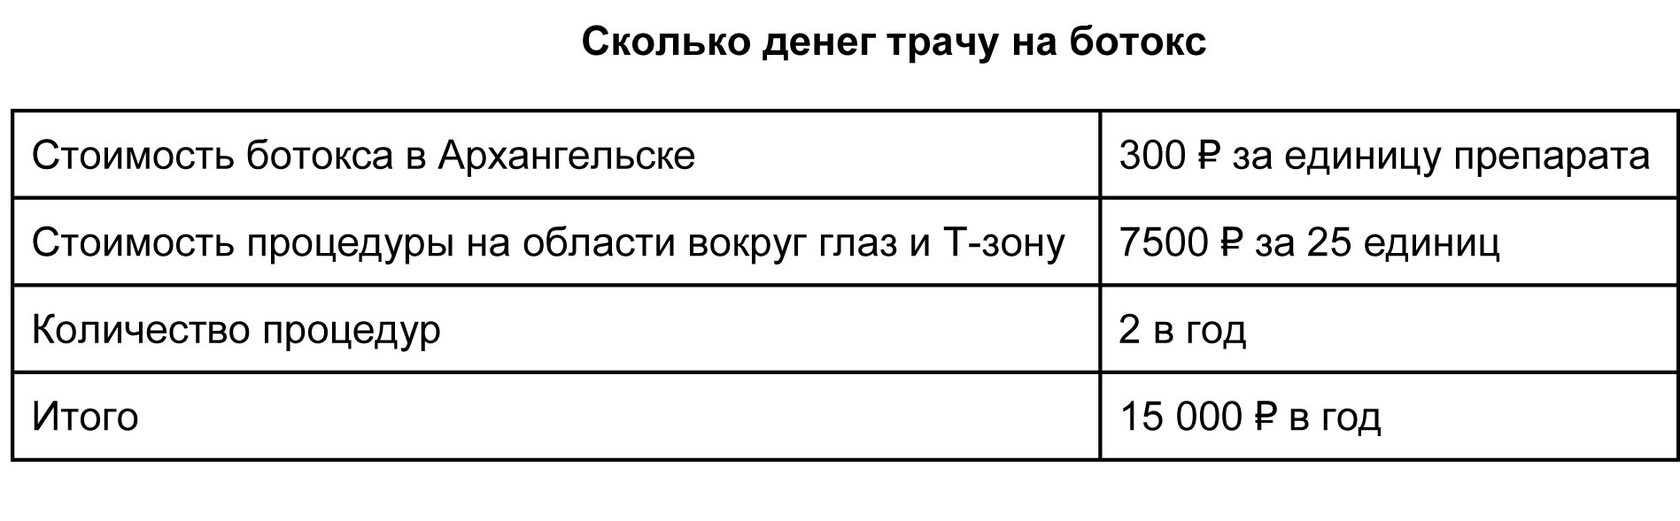 расходы на инъекции ботокса в Архангельске